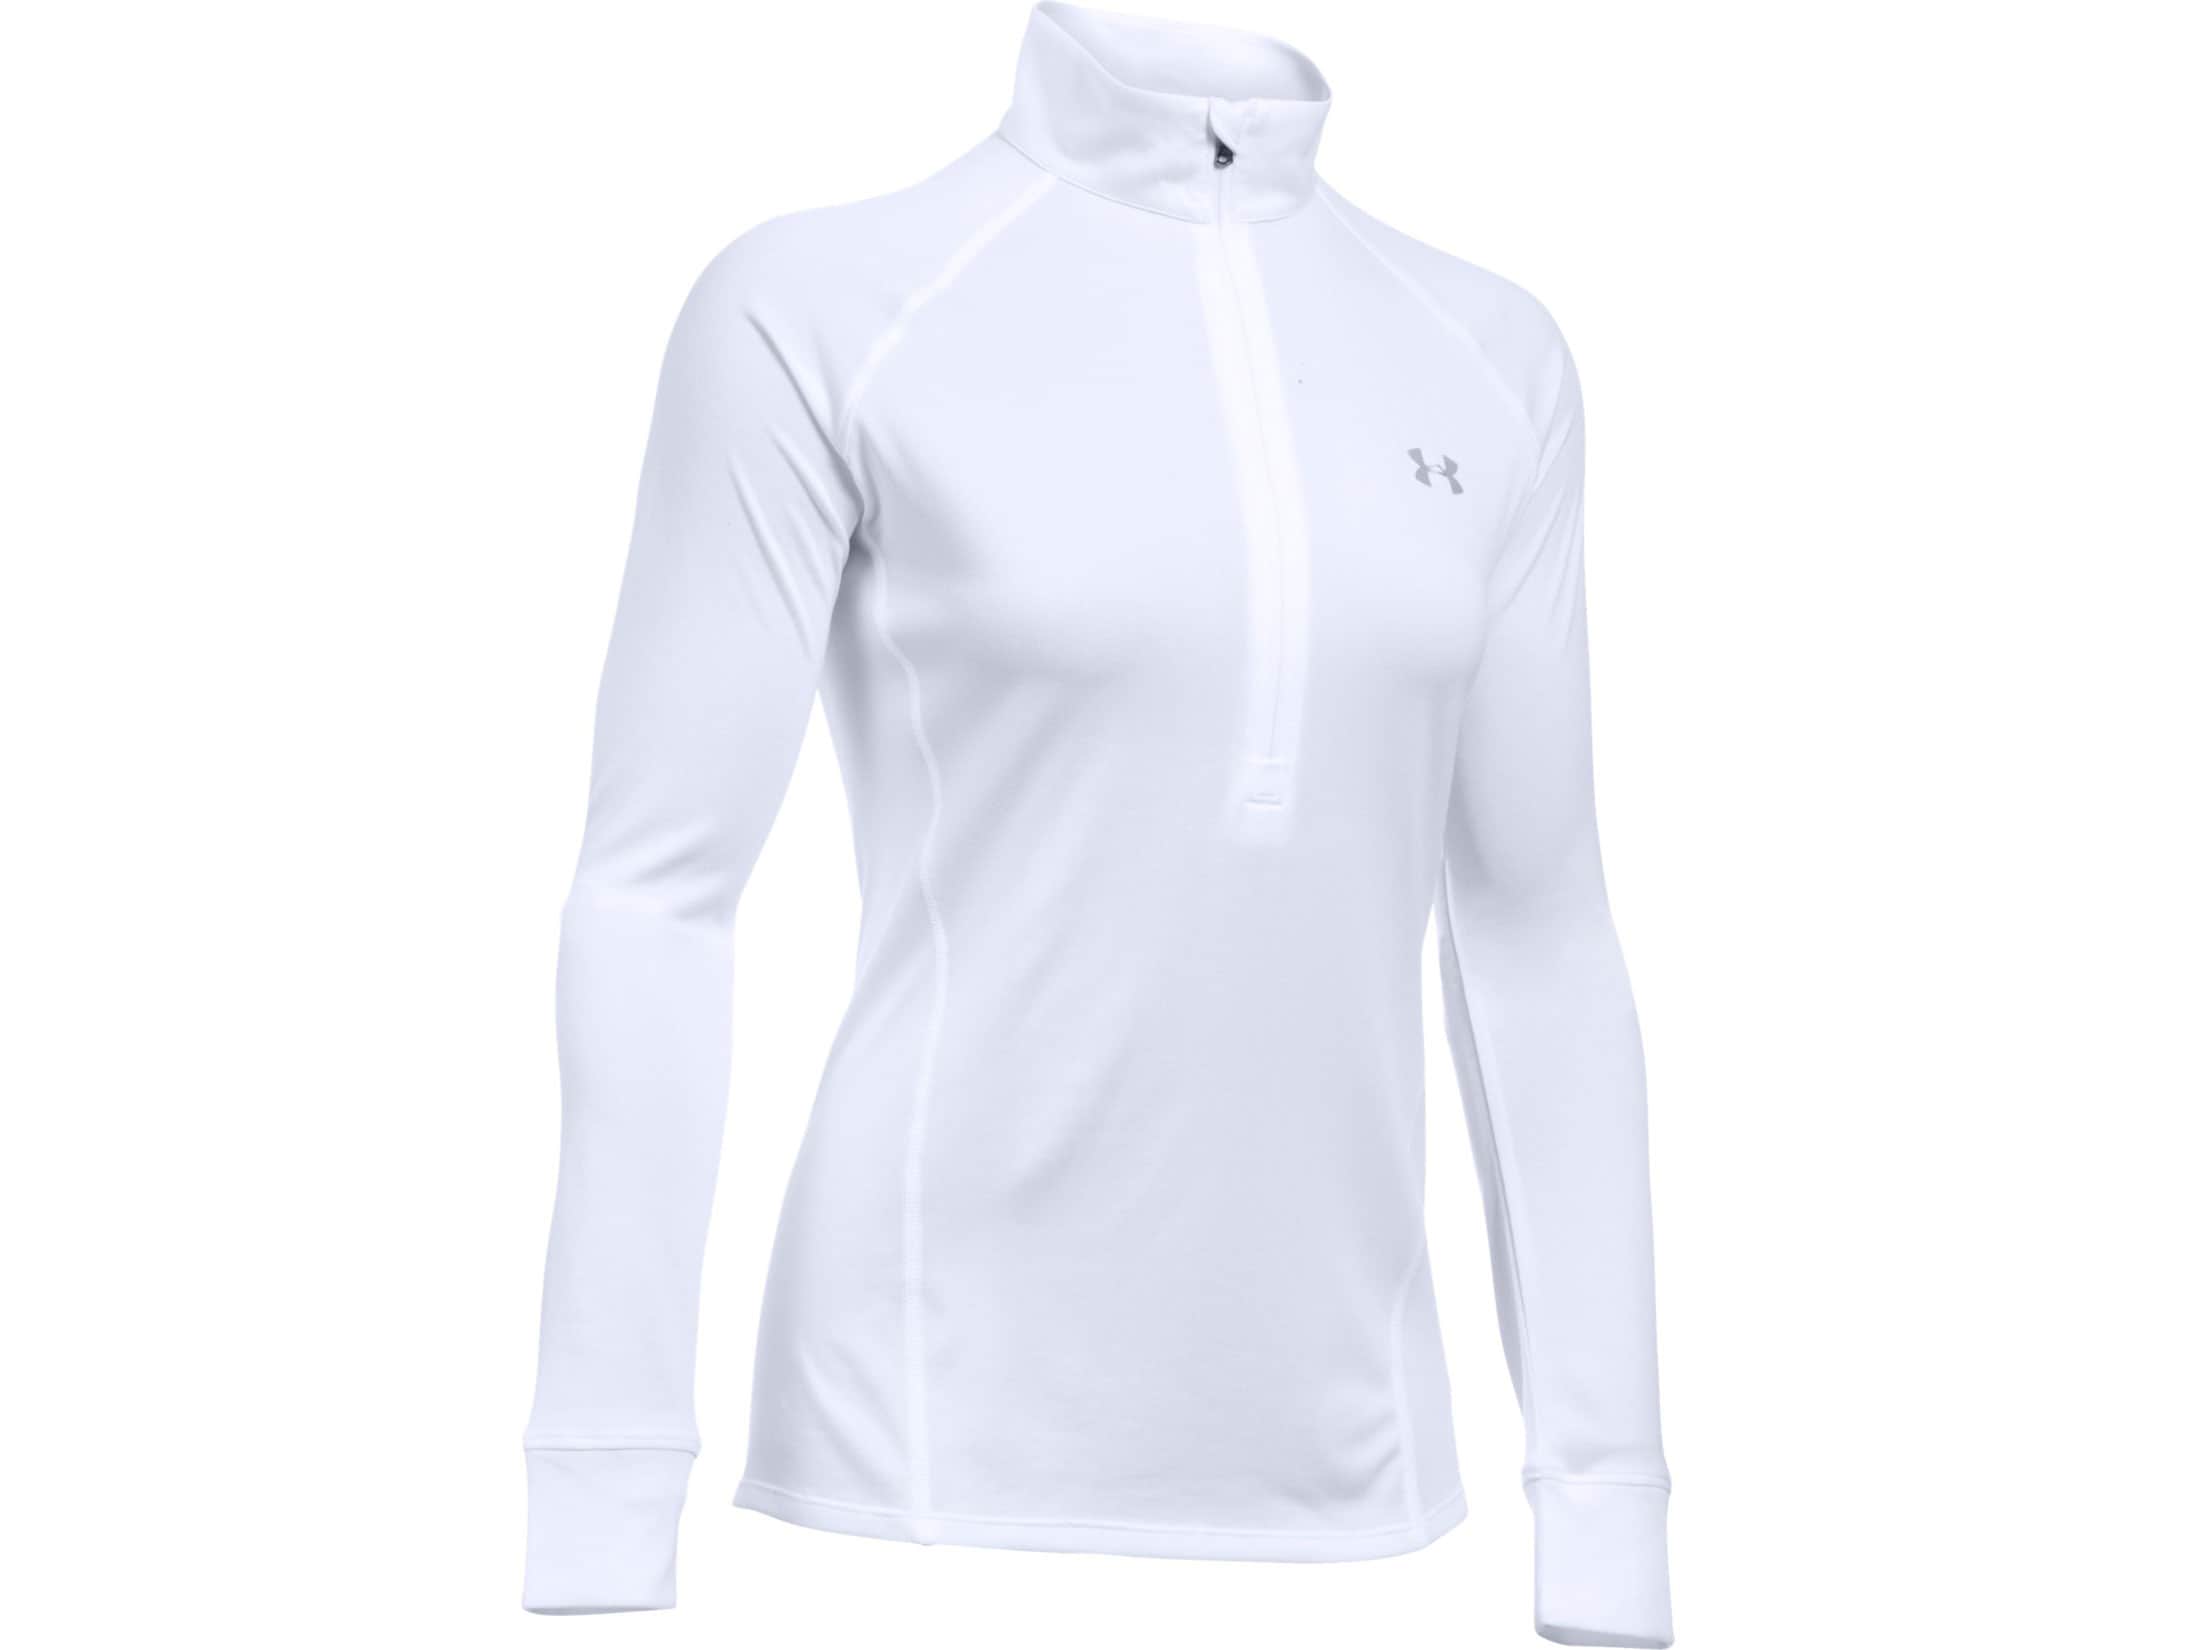 Under Armour Women's UA Tech 1/2 Zip Shirt Long Sleeve Polyester White